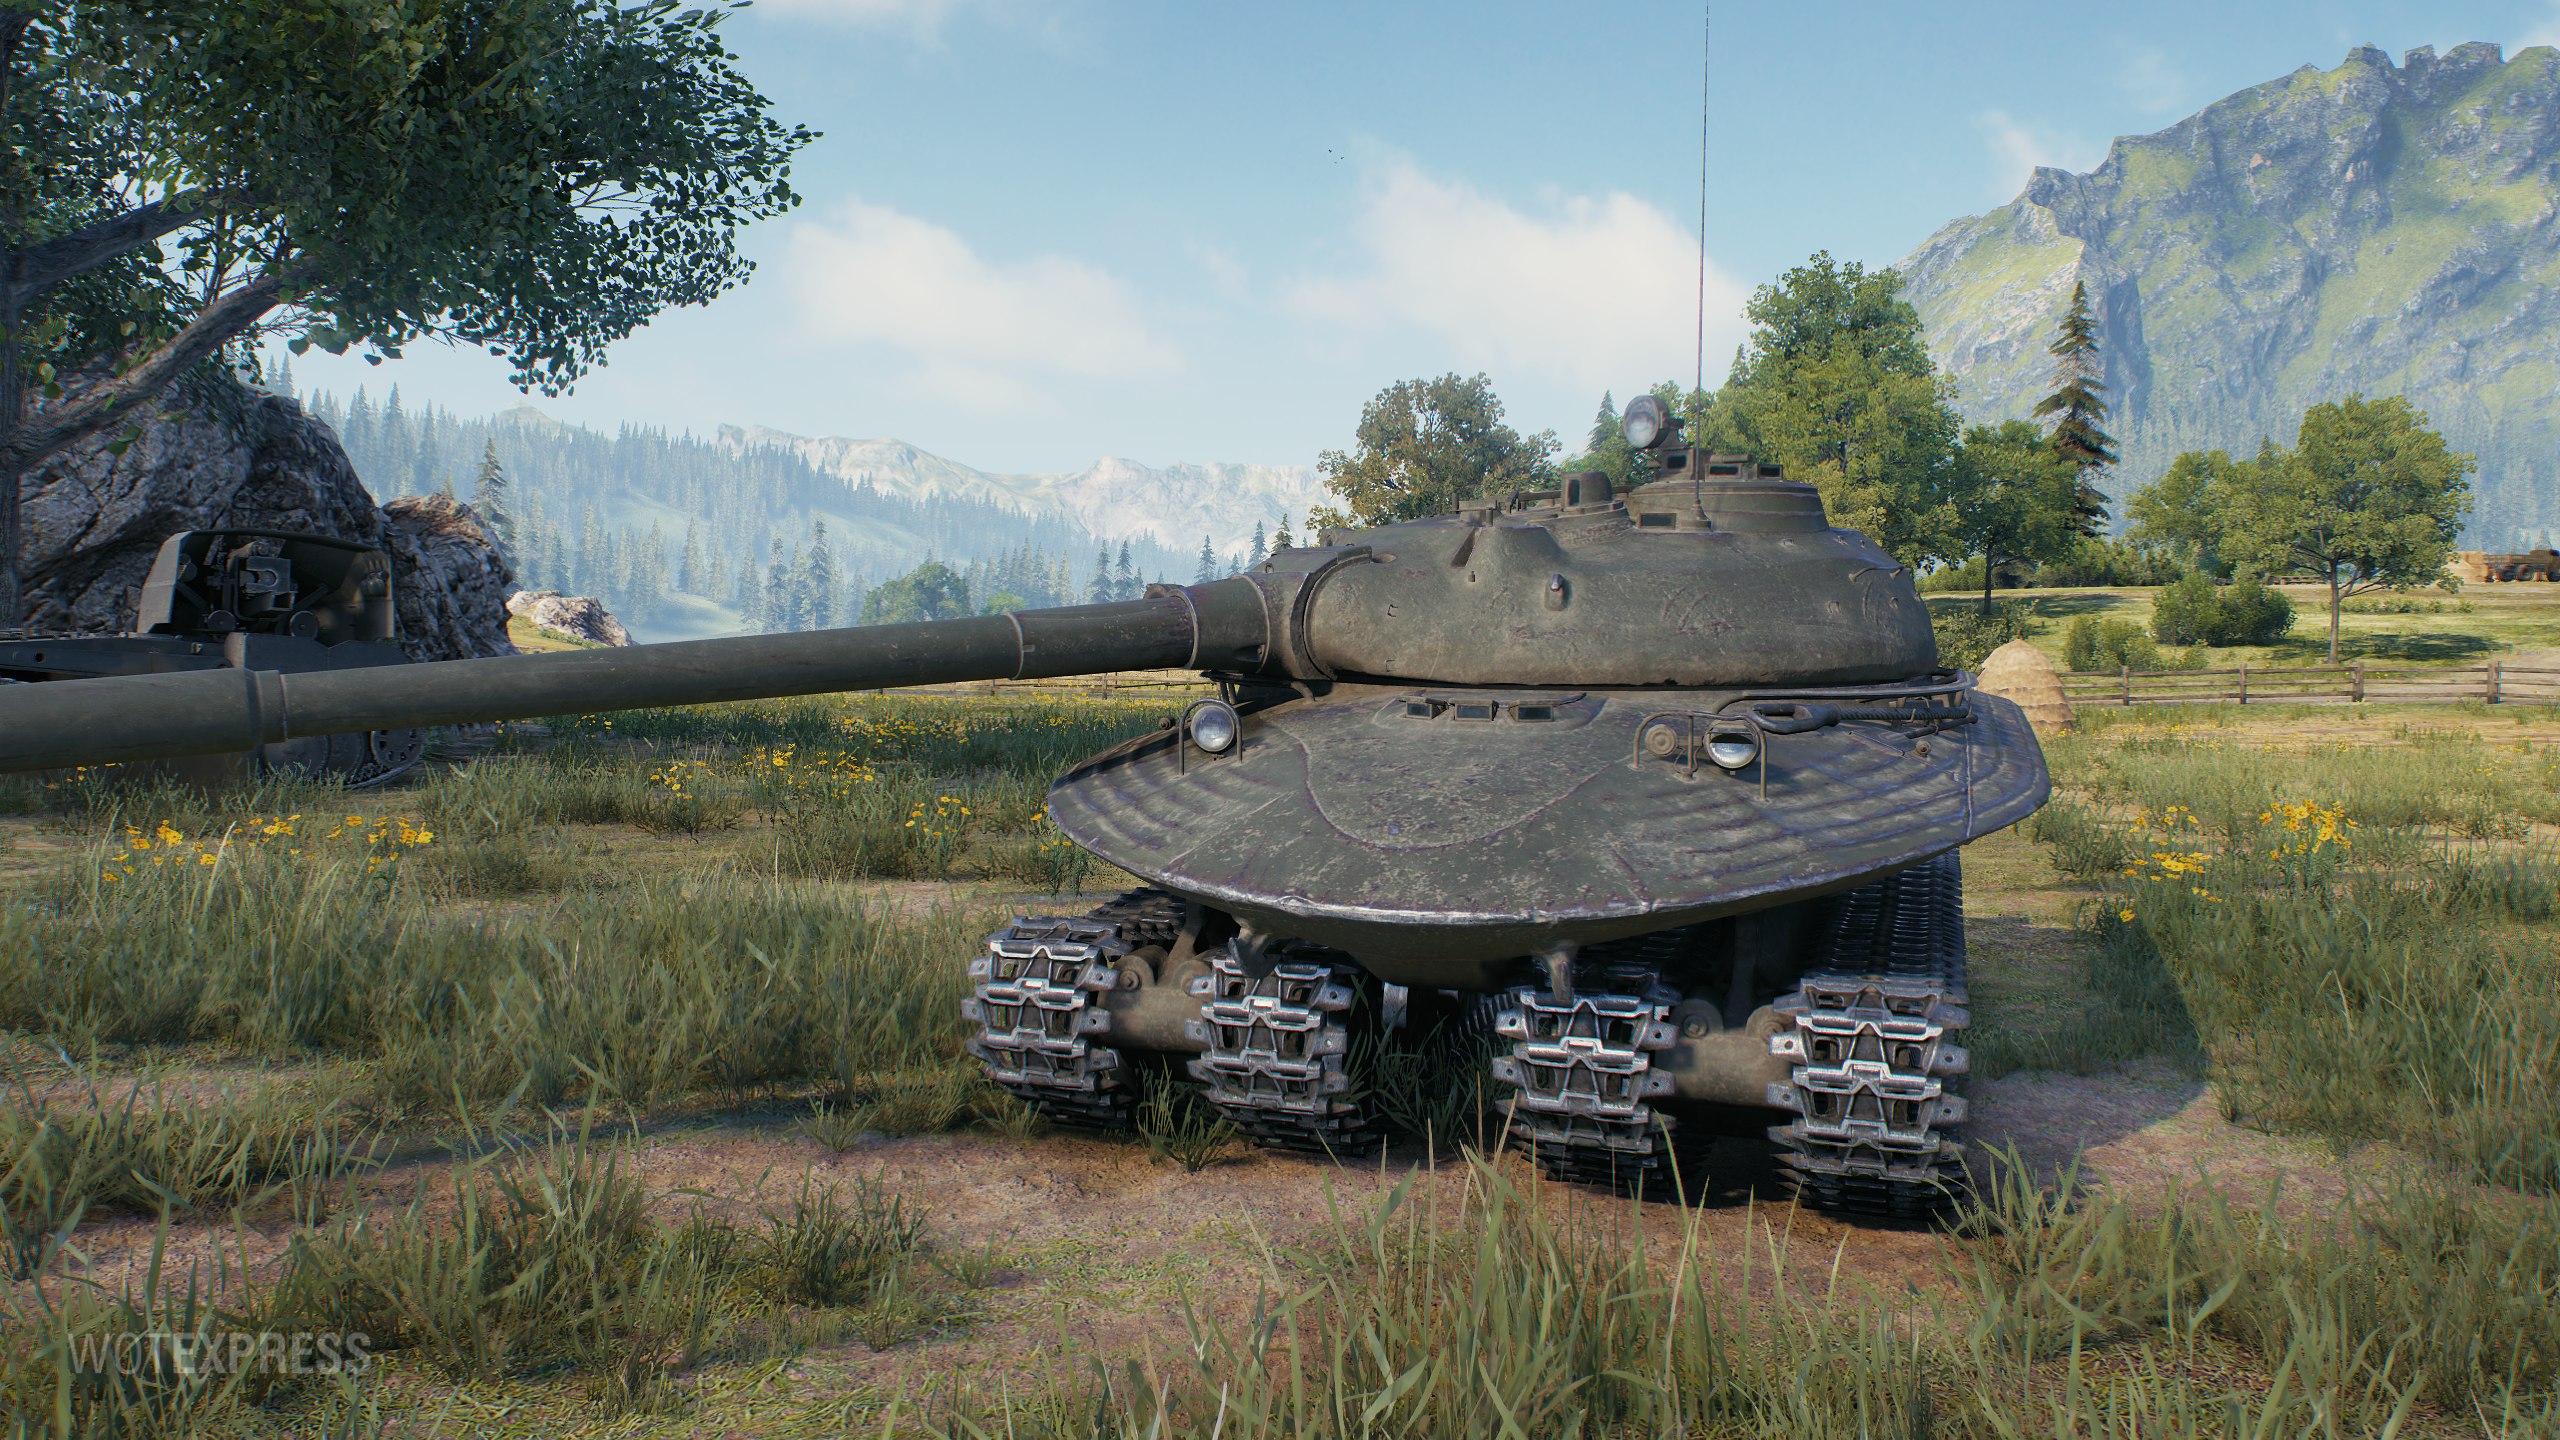 Тяжелый танк ис-3: эксплуатация и боевое применение